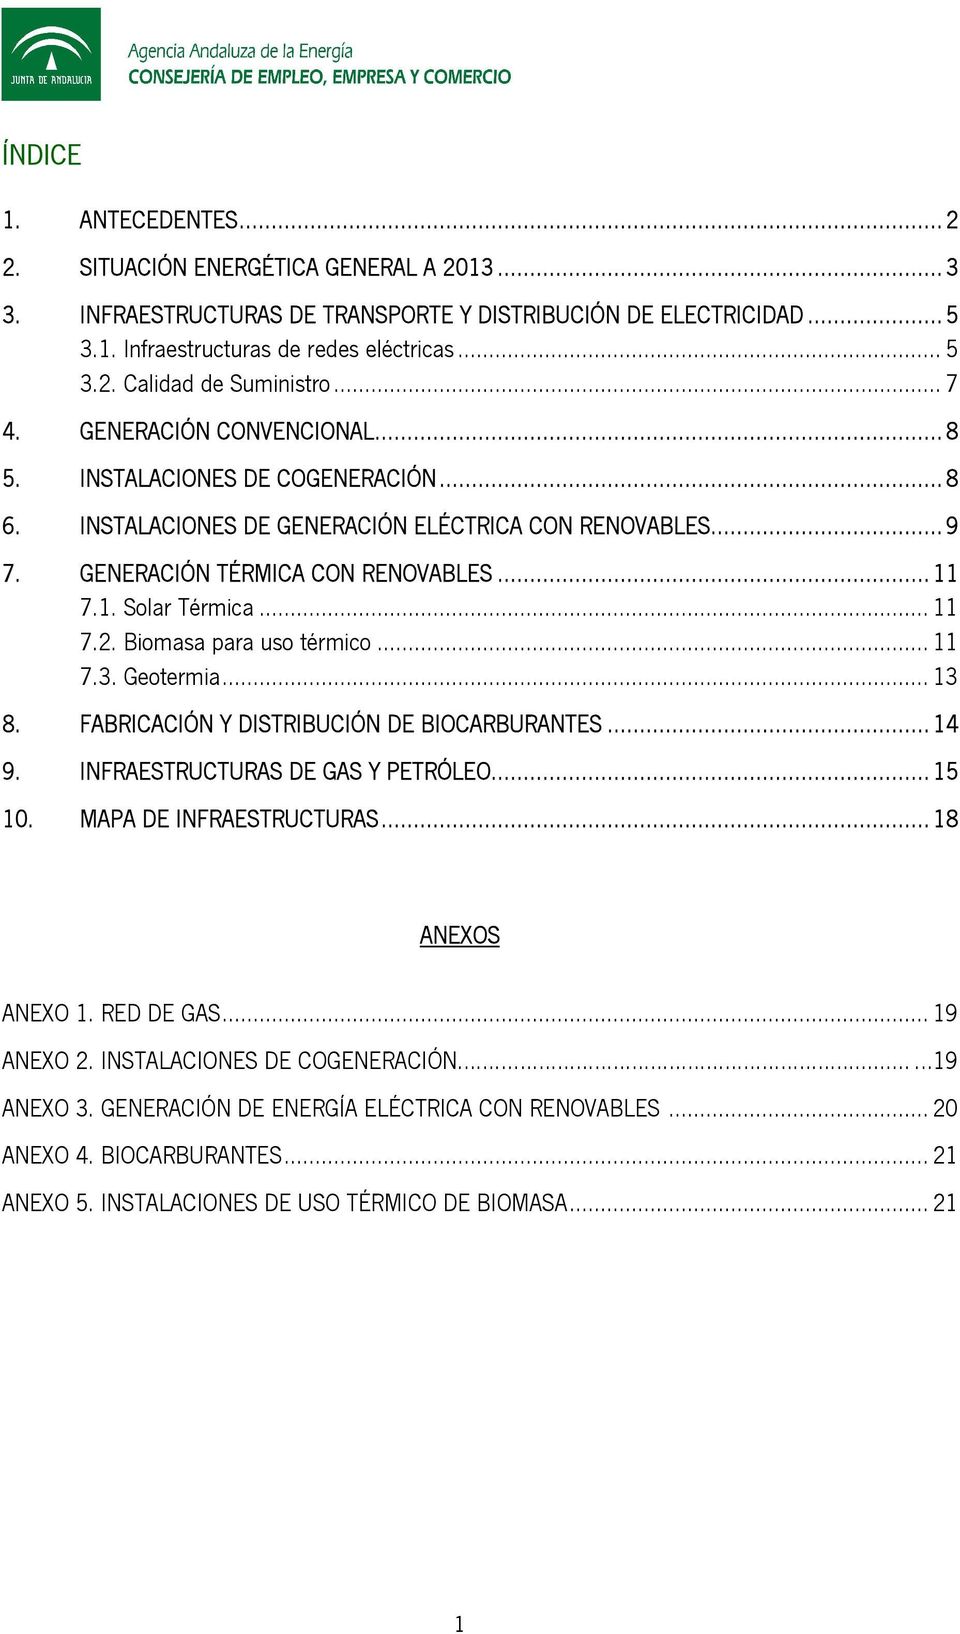 .. 11 7.2. Biomasa para uso térmico... 11 7.3. Geotermia... 13 8. FABRICACIÓN Y DISTRIBUCIÓN DE BIOCARBURANTES... 14 9. INFRAESTRUCTURAS DE GAS Y PETRÓLEO... 15 10. MAPA DE INFRAESTRUCTURAS.